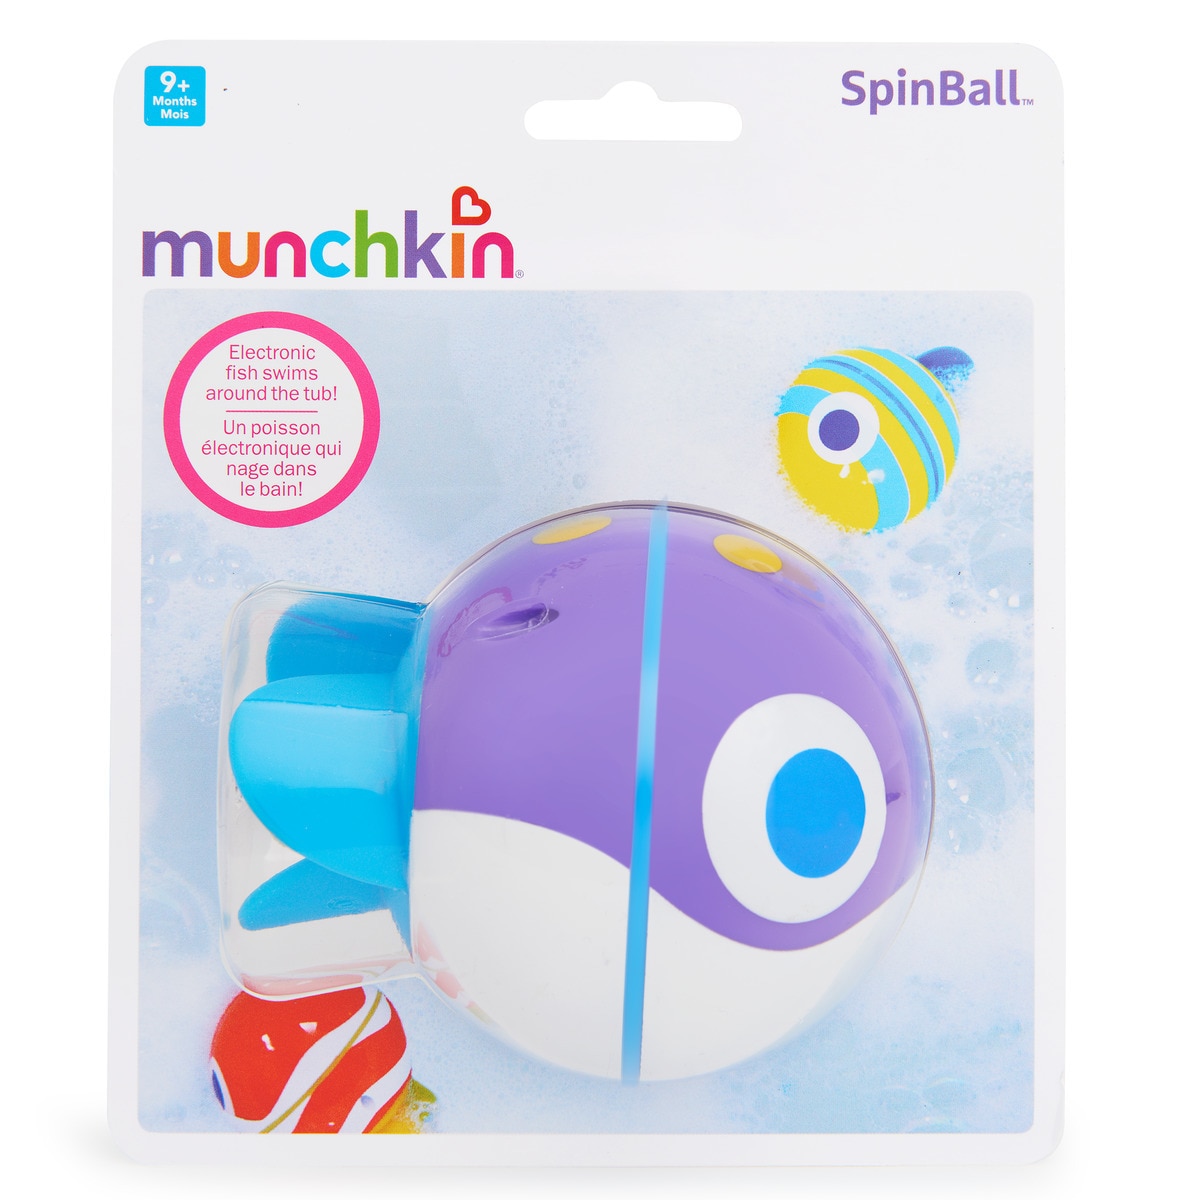 munchkin spinball